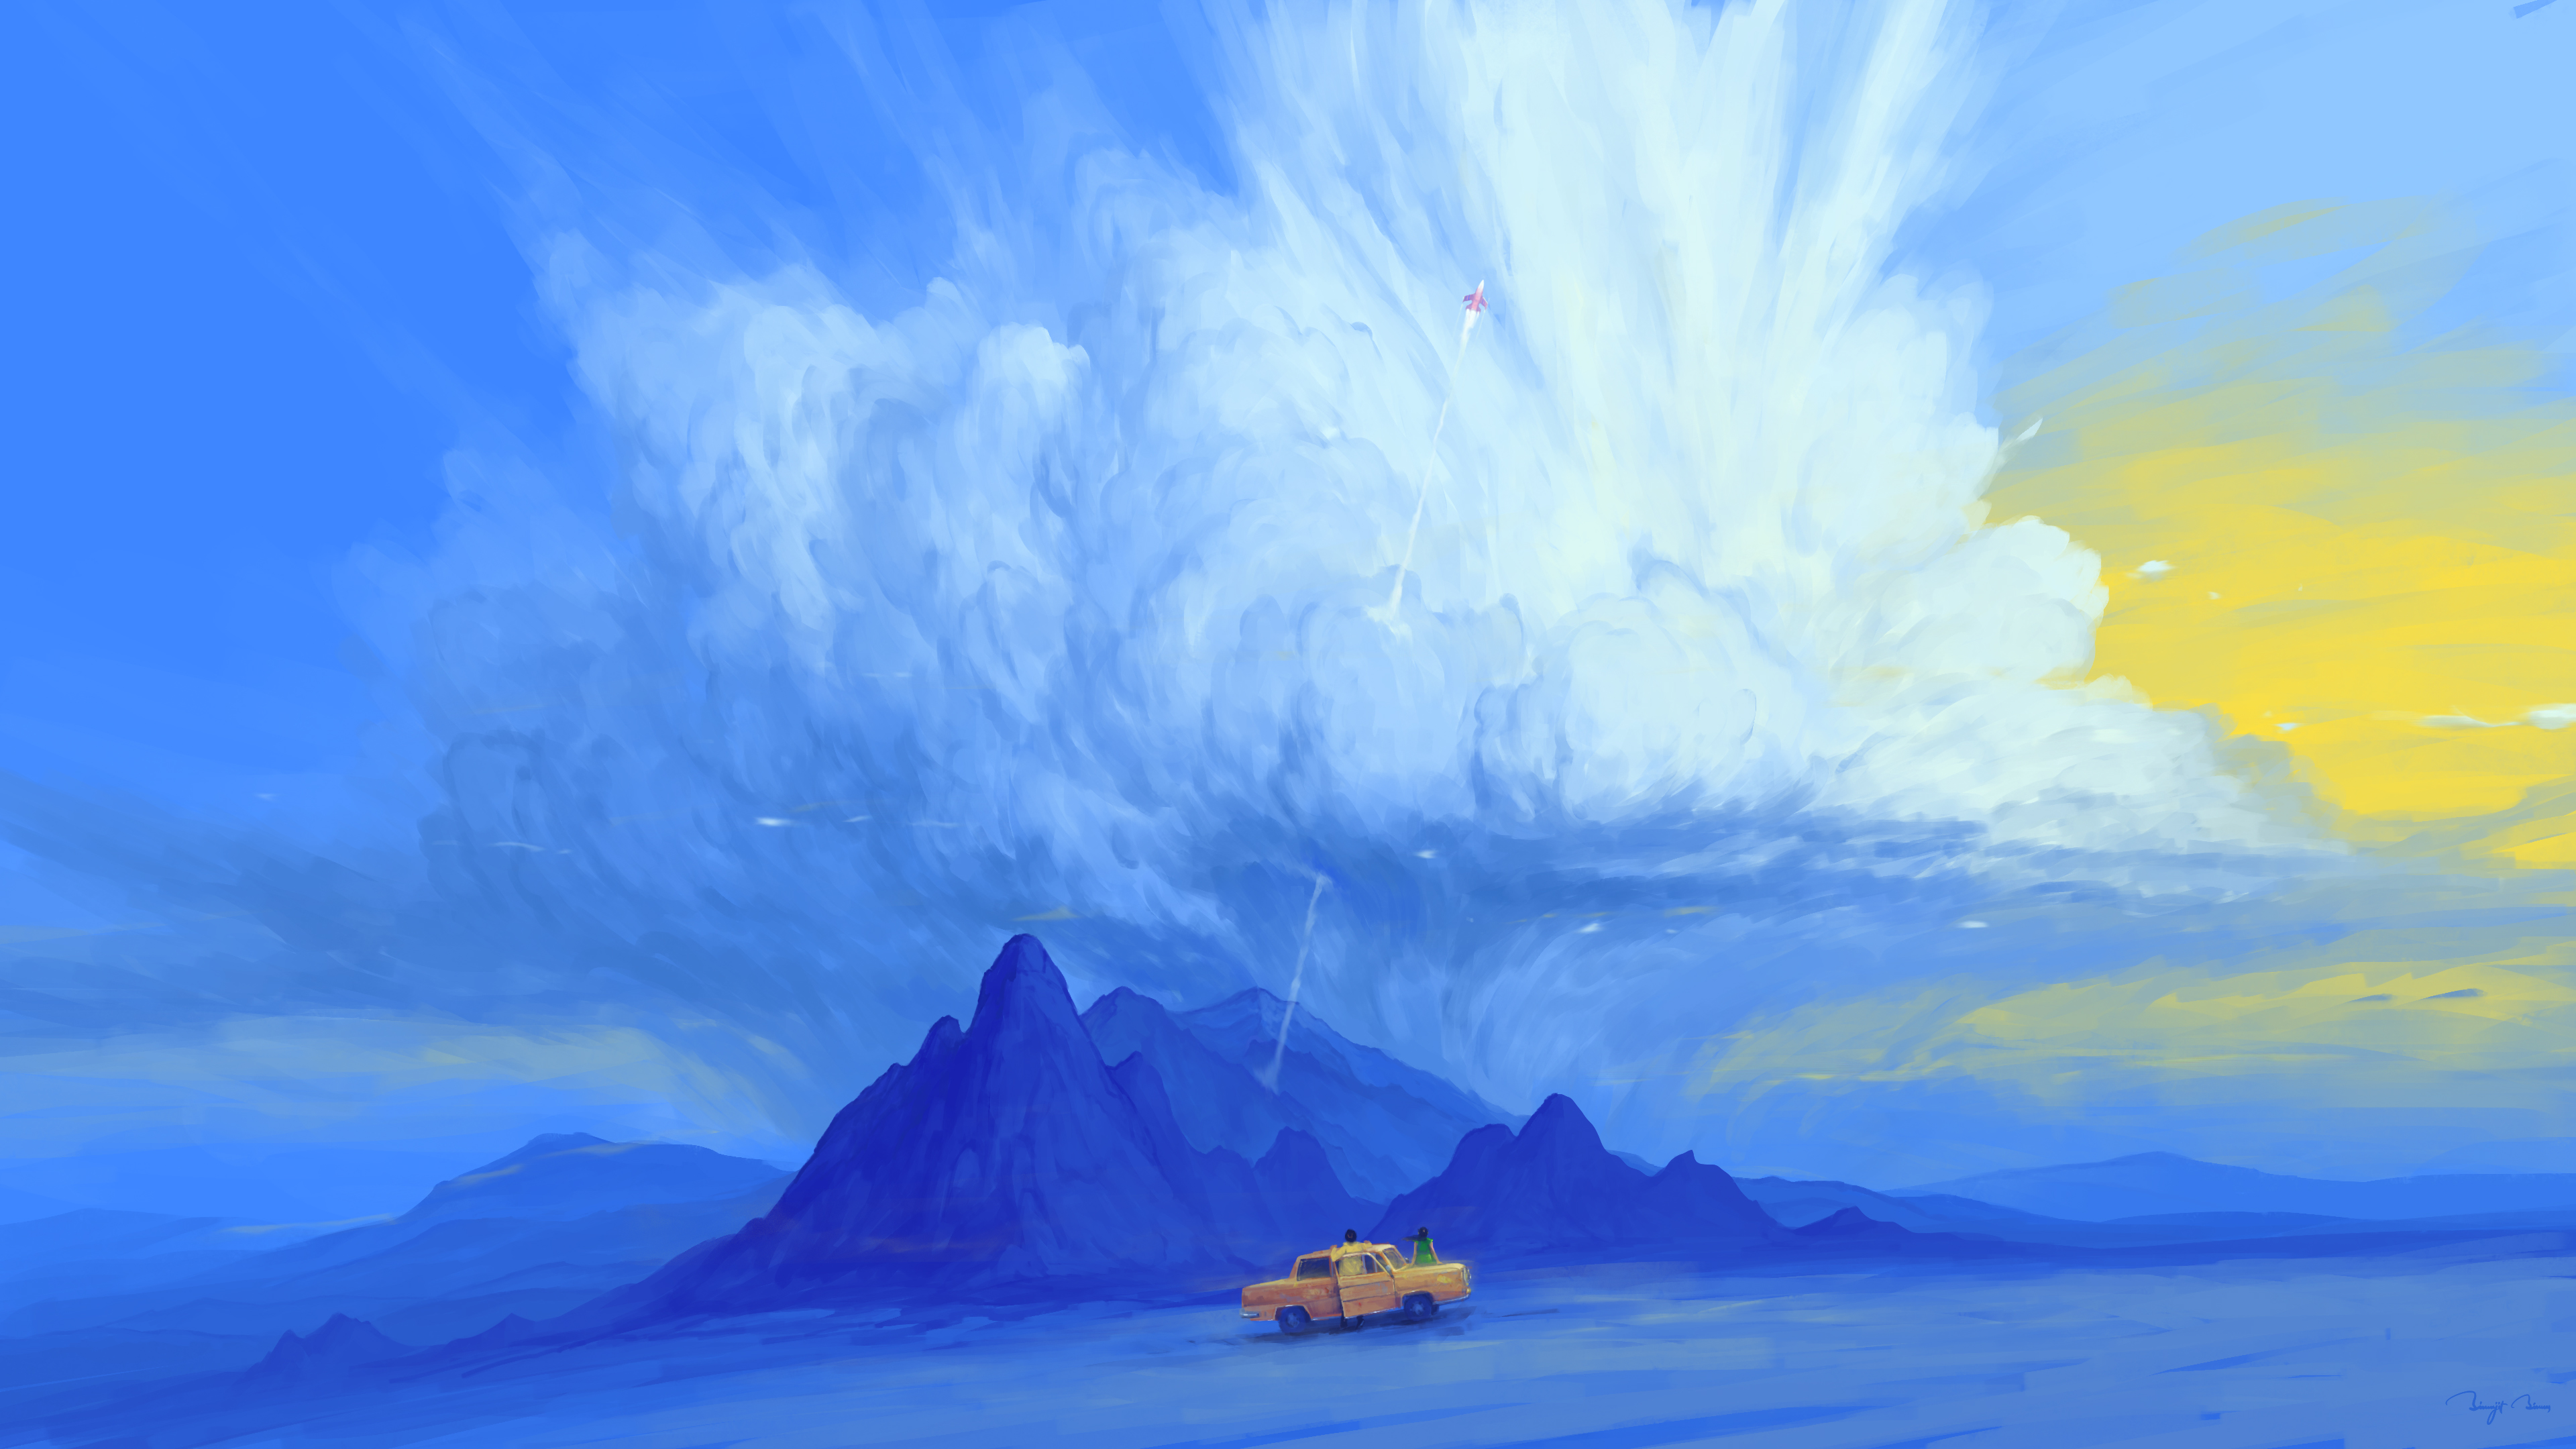 BisBiswas Digital Art Artwork Illustration Landscape Clouds 4K Car Vehicle Airplane Blue Rock Format 3840x2160